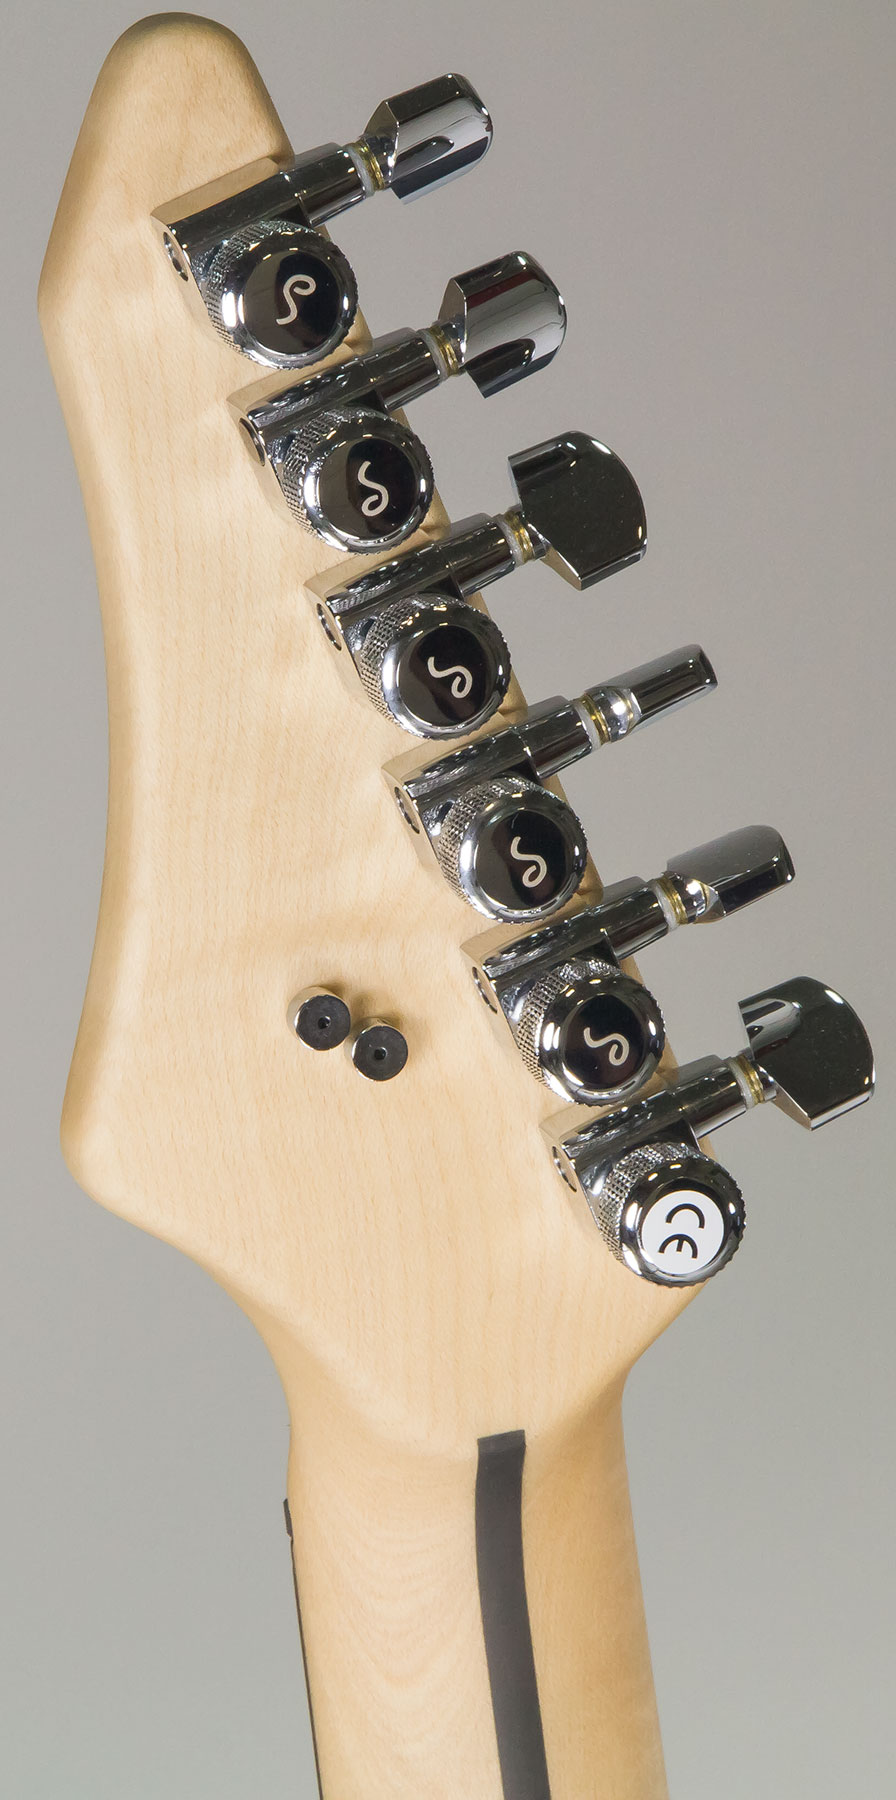 Vigier Excalibur Indus Hh Trem Rw - Textured Black - Guitarra eléctrica de doble corte - Variation 5